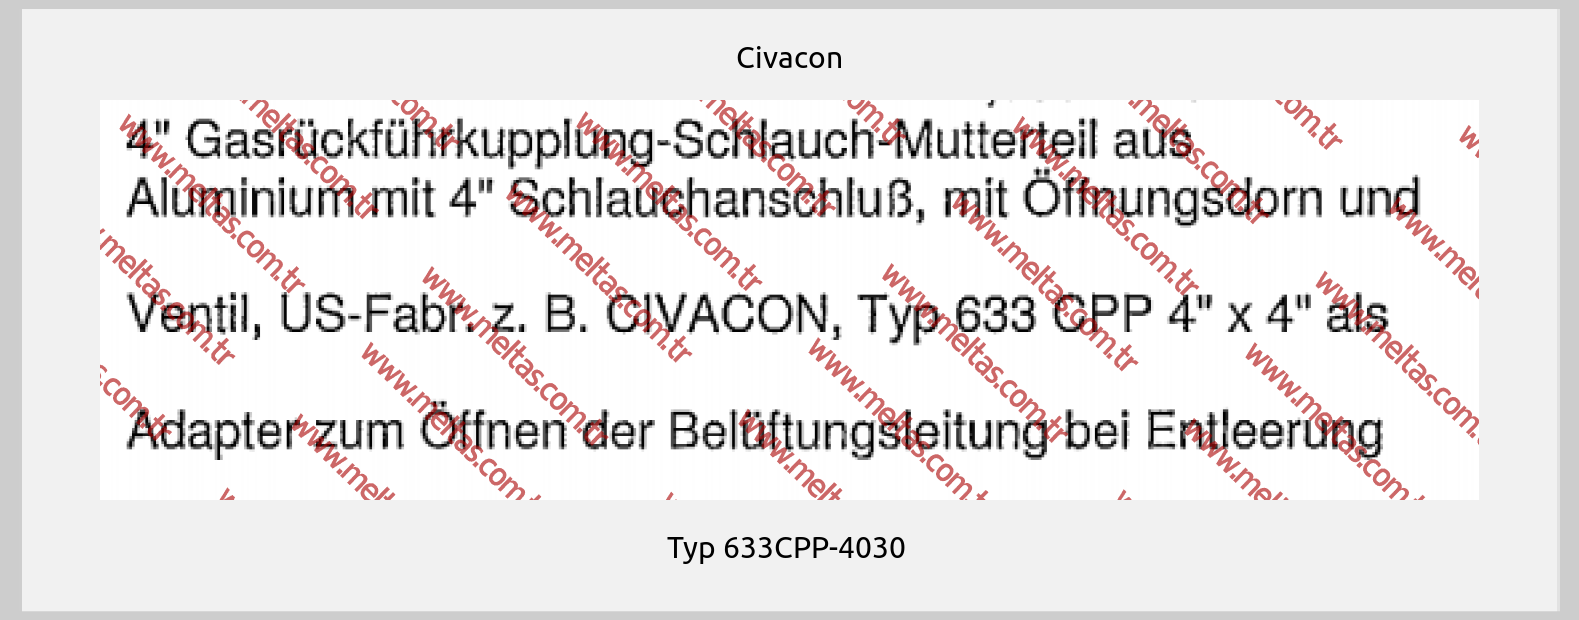 Civacon-Typ 633CPP-4030 